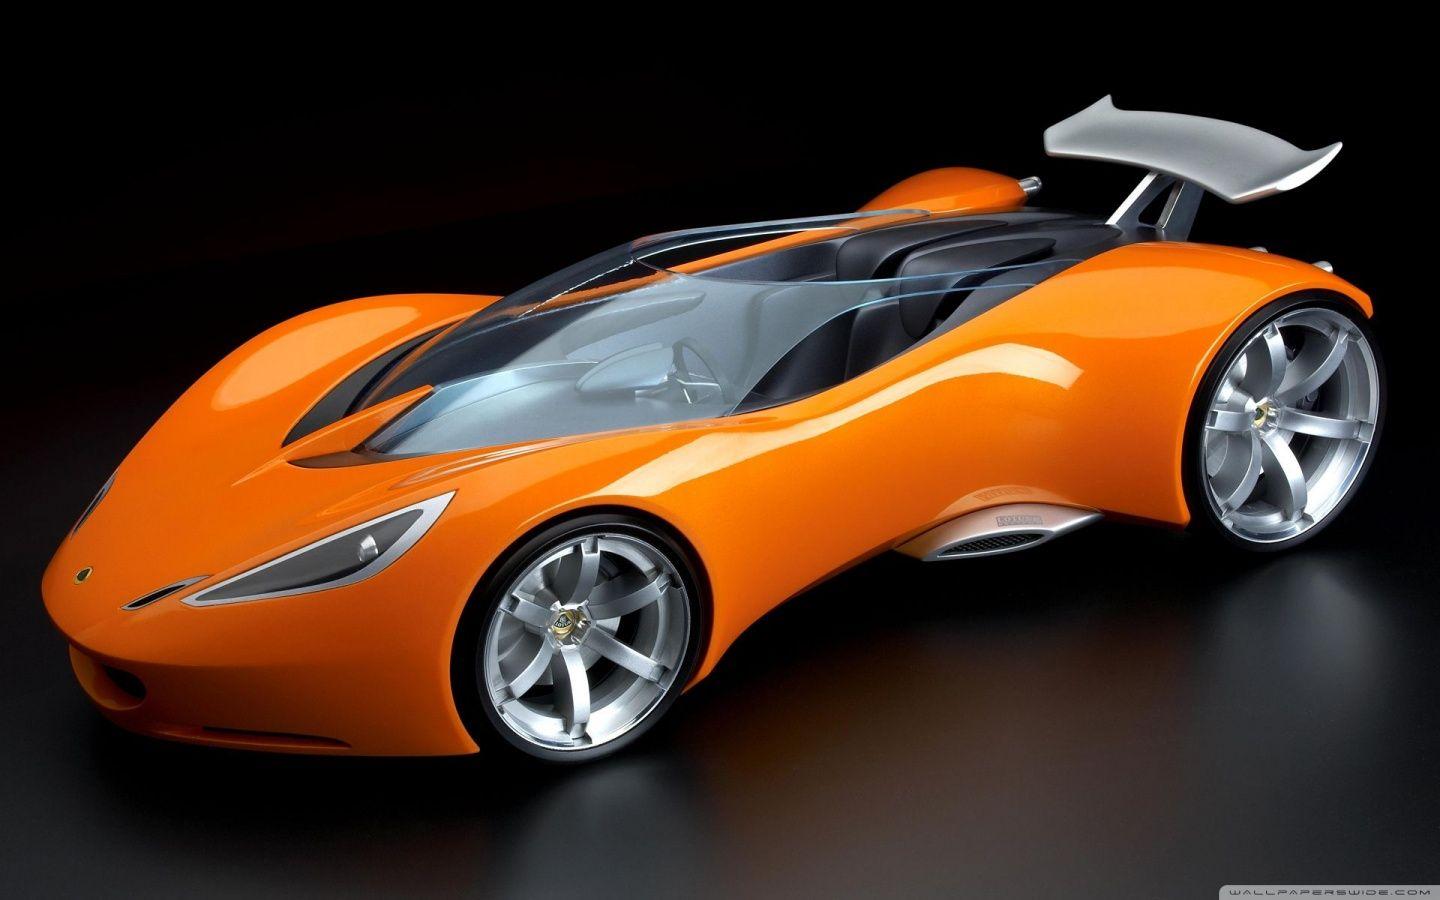 3D Cars 17 HD desktop wallpaper, Widescreen, High Definition